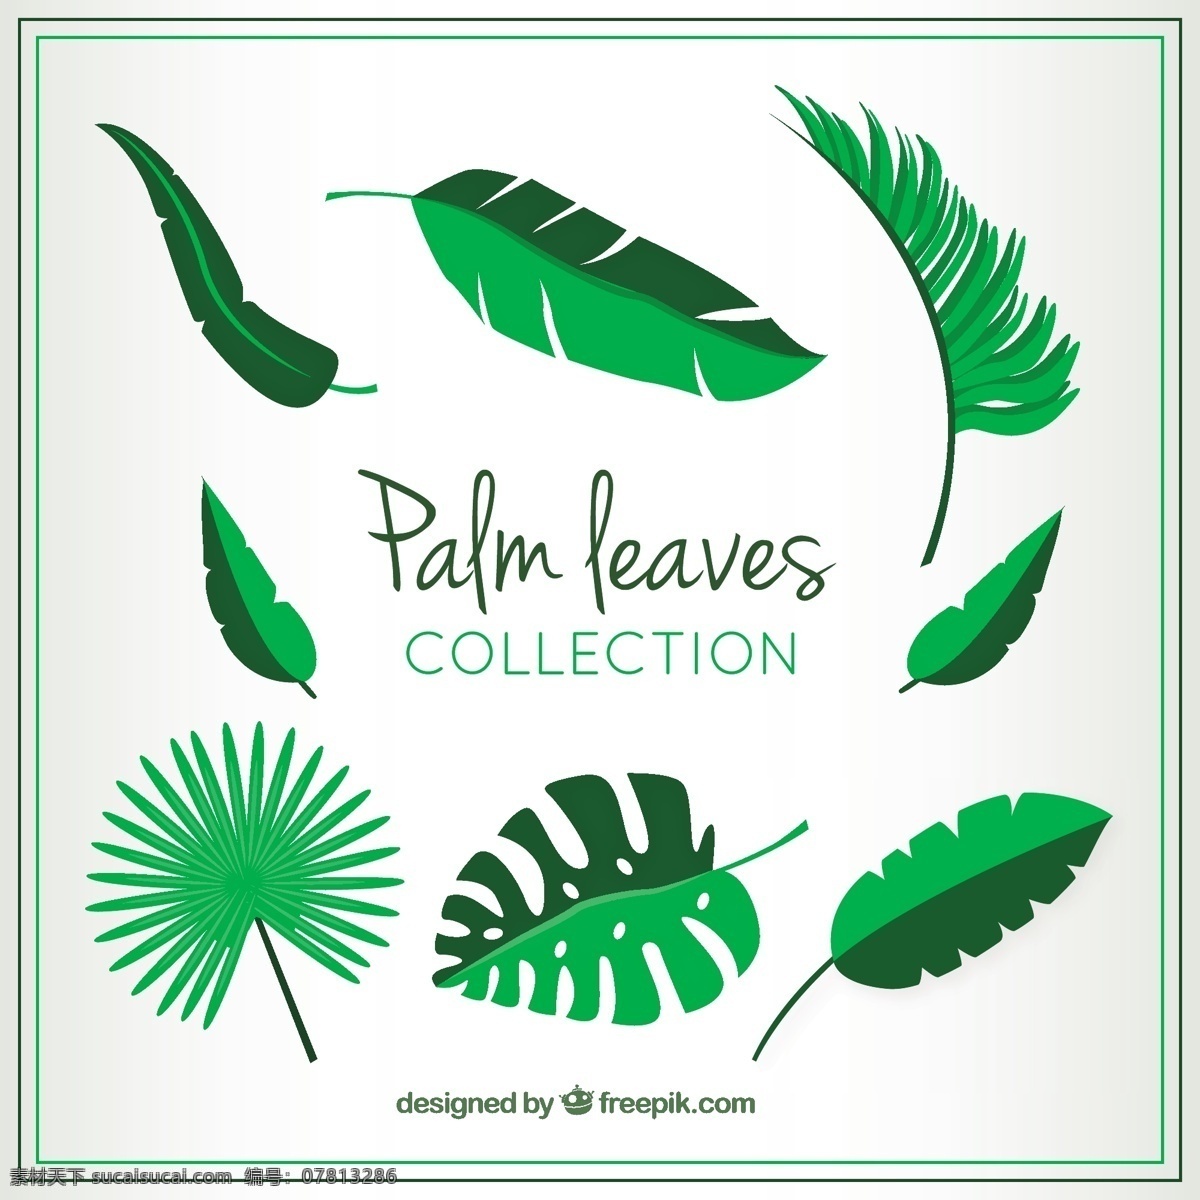 棕榈叶的种类 手 自然 绿色 叶 手画 热带 图 棕榈 绿叶 植物 品种 异国 棕榈叶 植被 白色